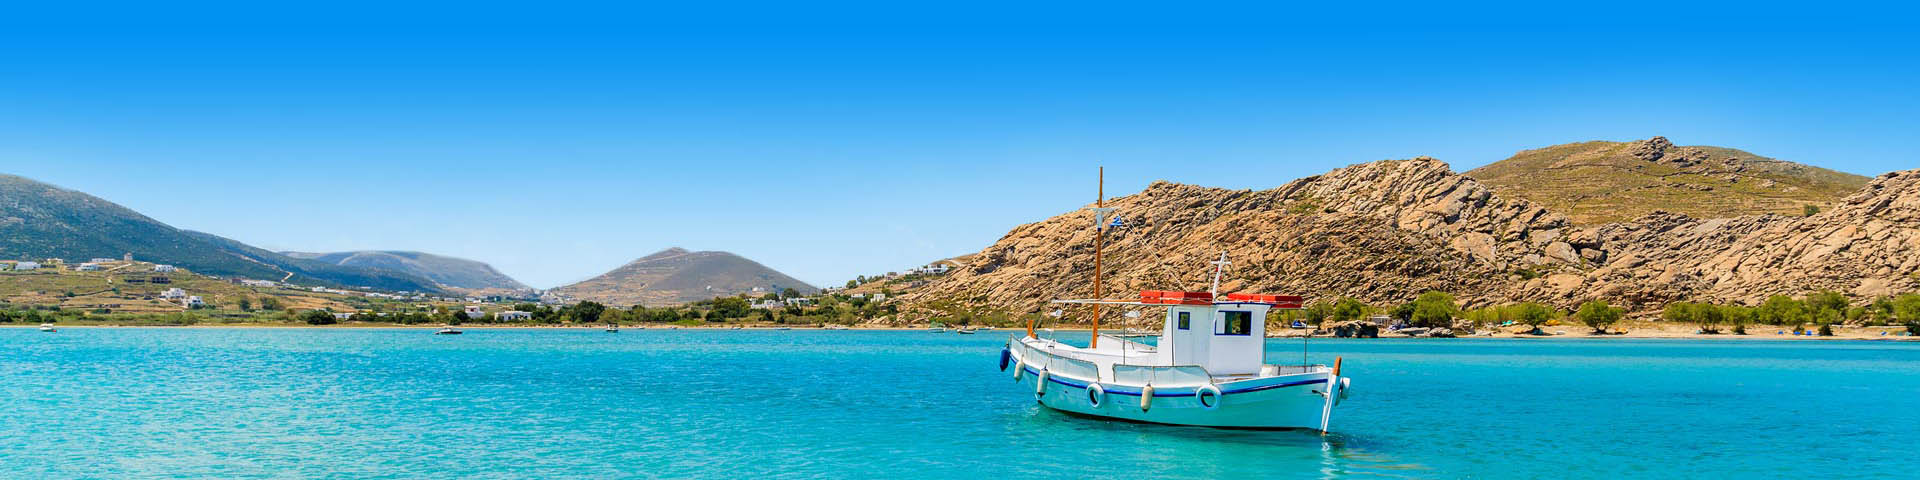 Prachtige Azuurblauwe zee met een bootje in Griekenland. 